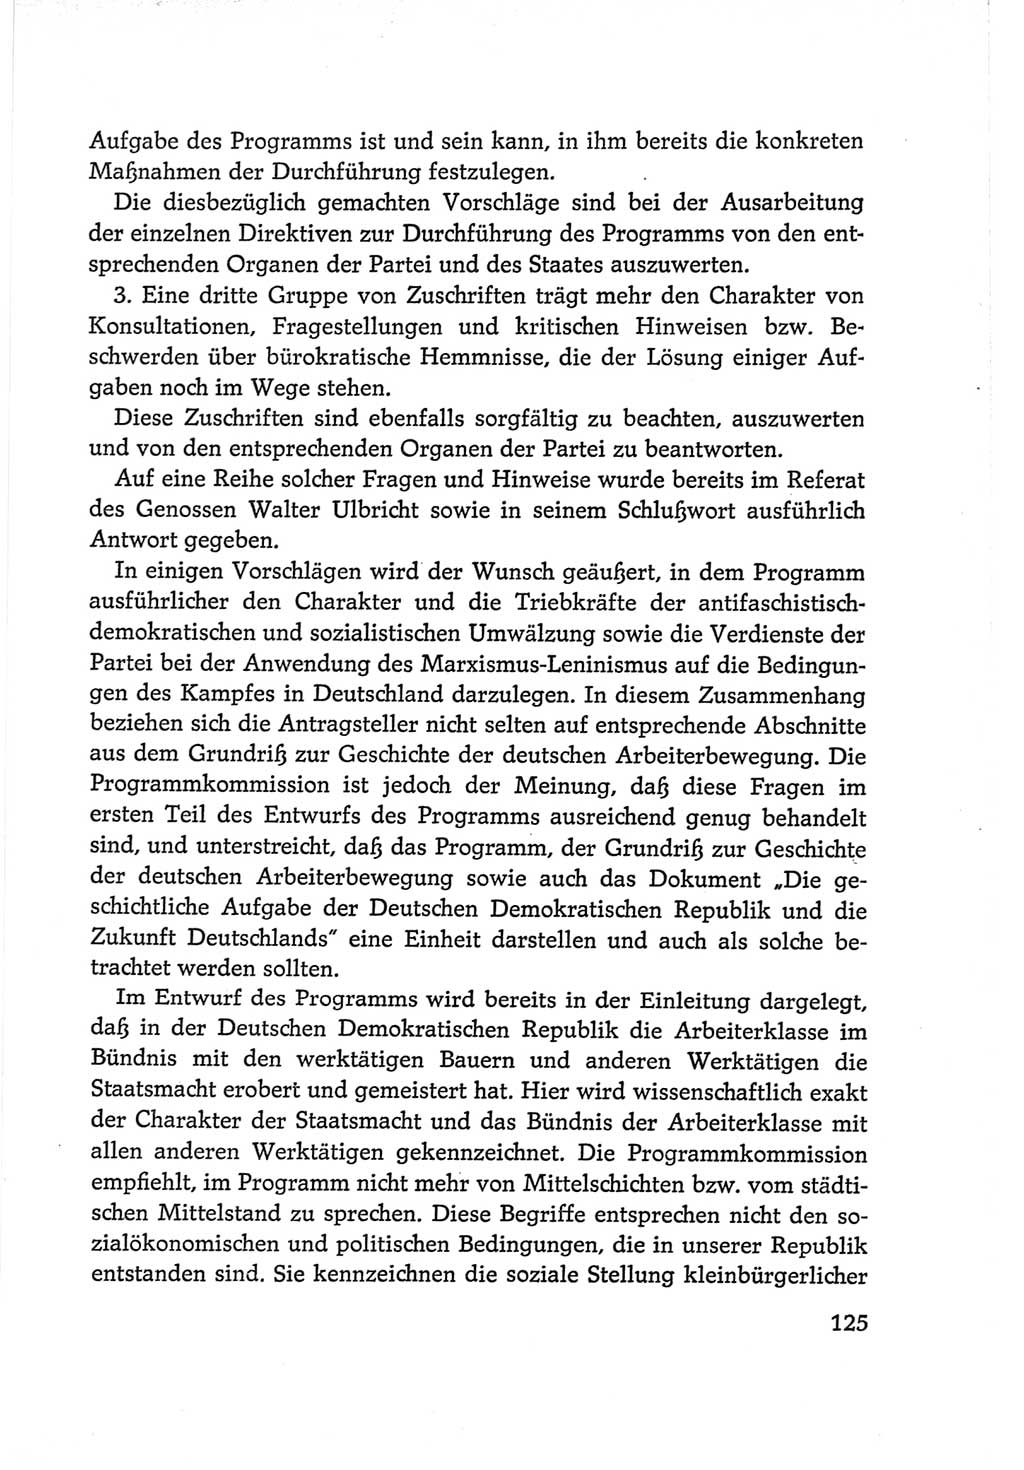 Protokoll der Verhandlungen des Ⅵ. Parteitages der Sozialistischen Einheitspartei Deutschlands (SED) [Deutsche Demokratische Republik (DDR)] 1963, Band Ⅱ, Seite 125 (Prot. Verh. Ⅵ. PT SED DDR 1963, Bd. Ⅱ, S. 125)